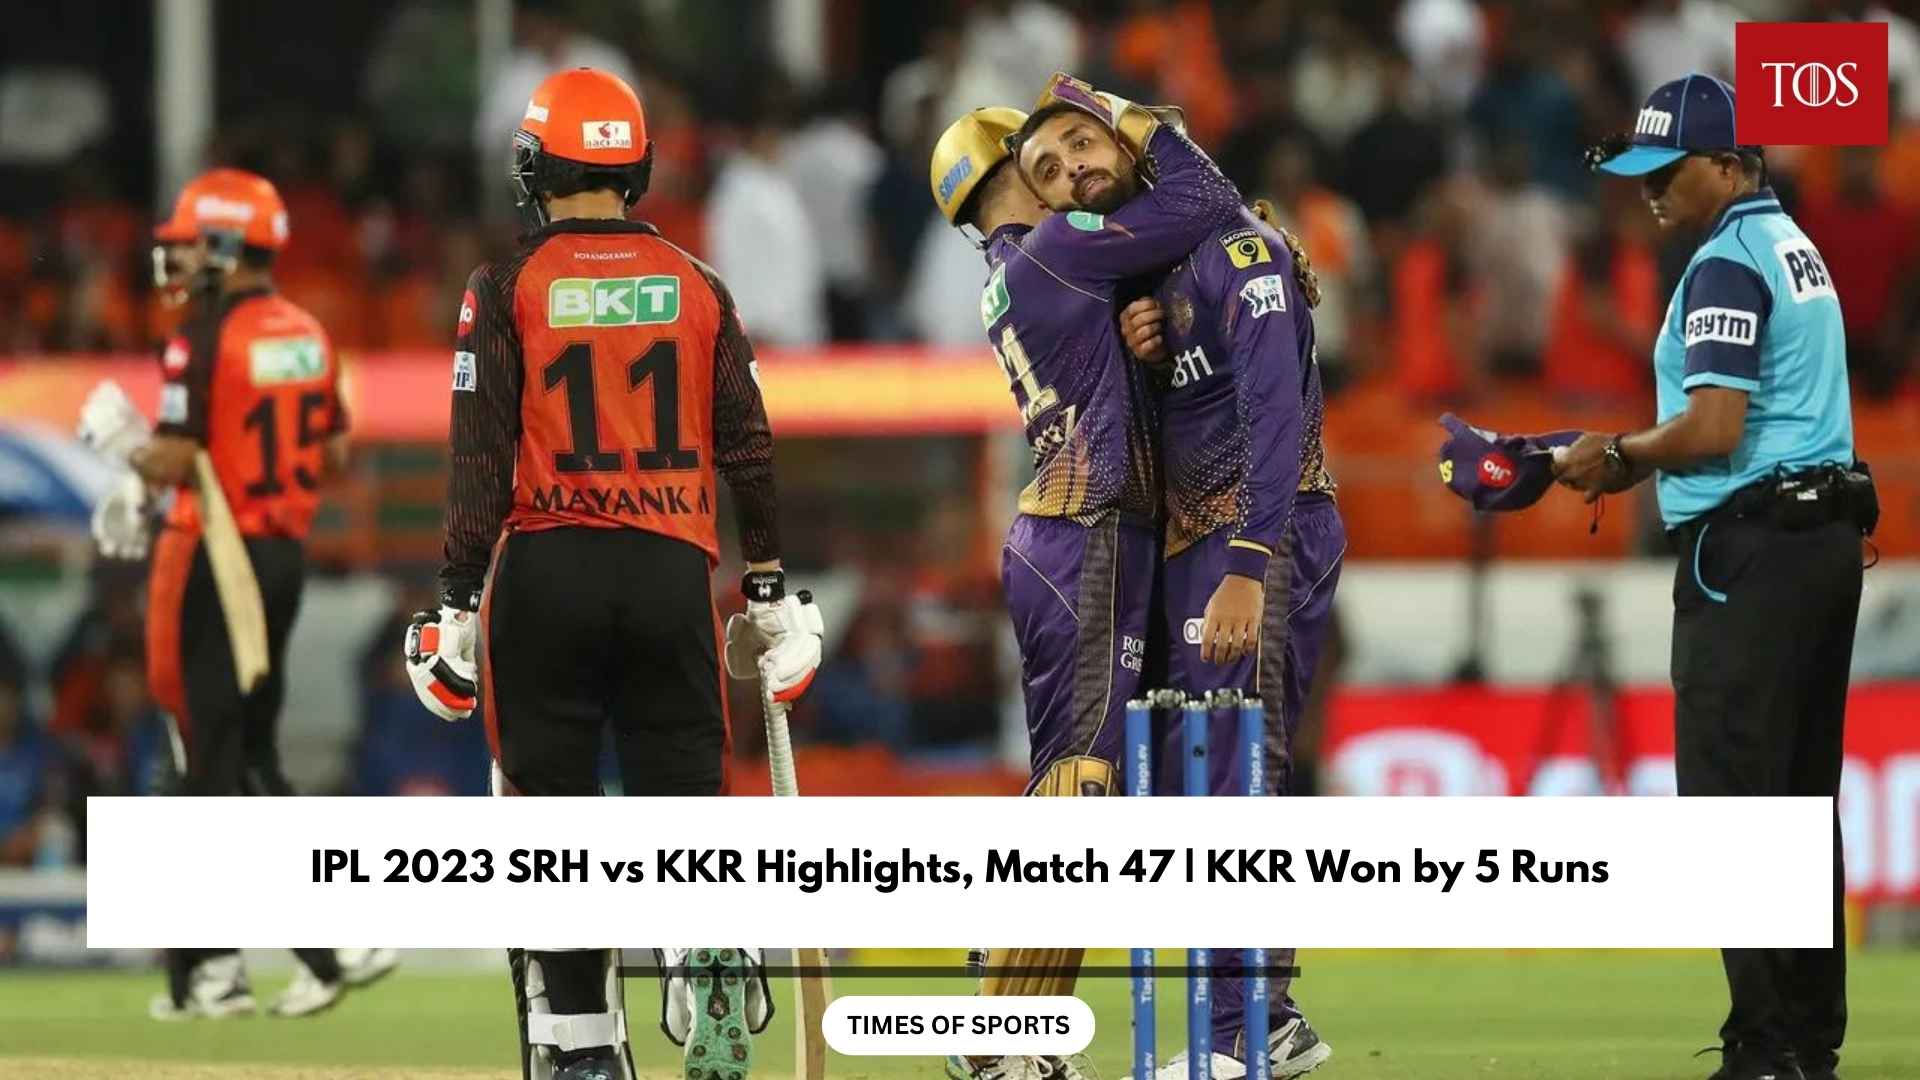 IPL 2023 SRH v KKR Highlights, Match 47 KKR Won by 5 Runs